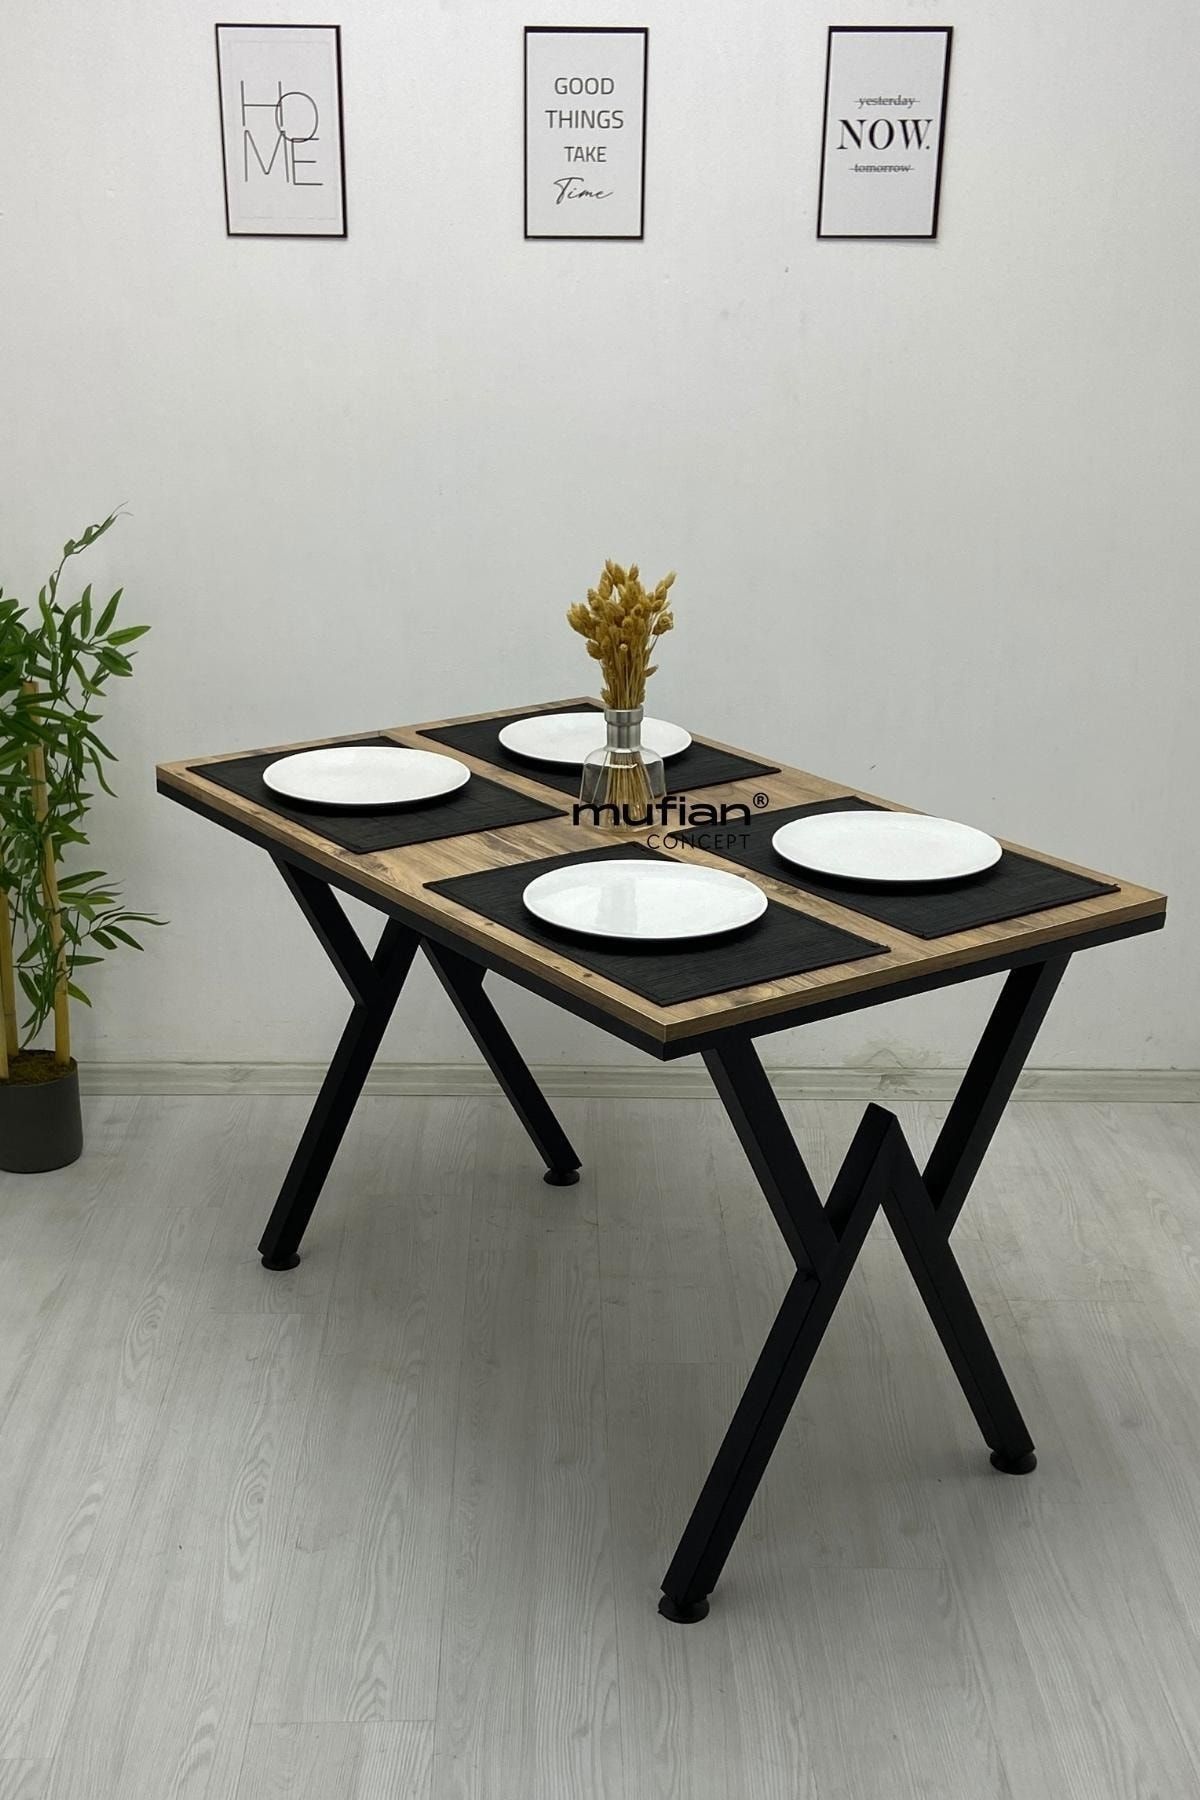 Mufian Concept 70 X 110 Cm - Atlantik Çam -v- Metal Ayaklı Mutfak Masası Yemek Masası Balkon Masası Çalışma Masası